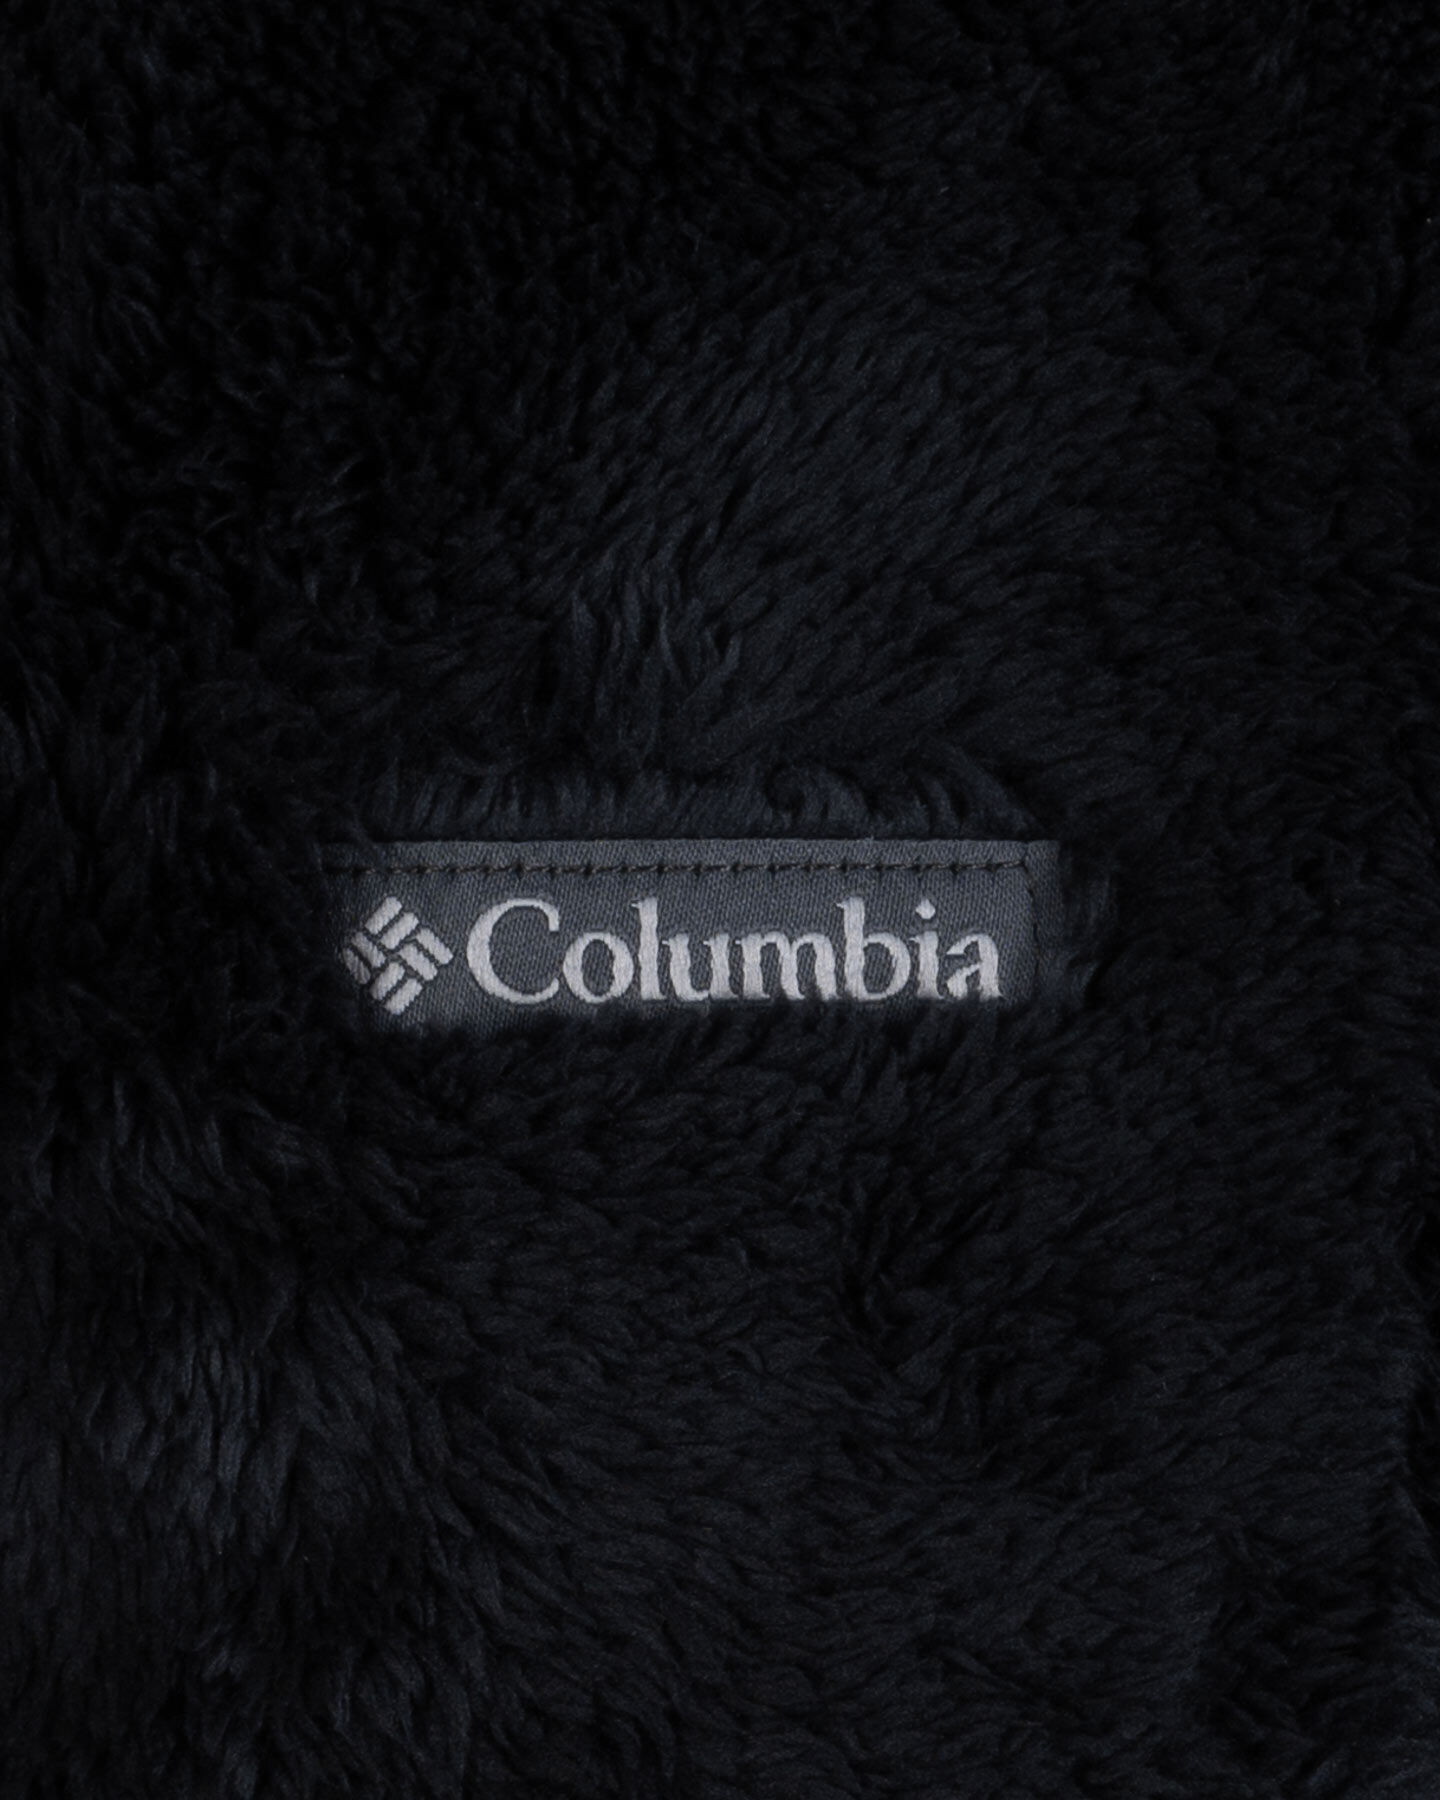  Felpa COLUMBIA SHERPA W S5576530|010|XS scatto 2